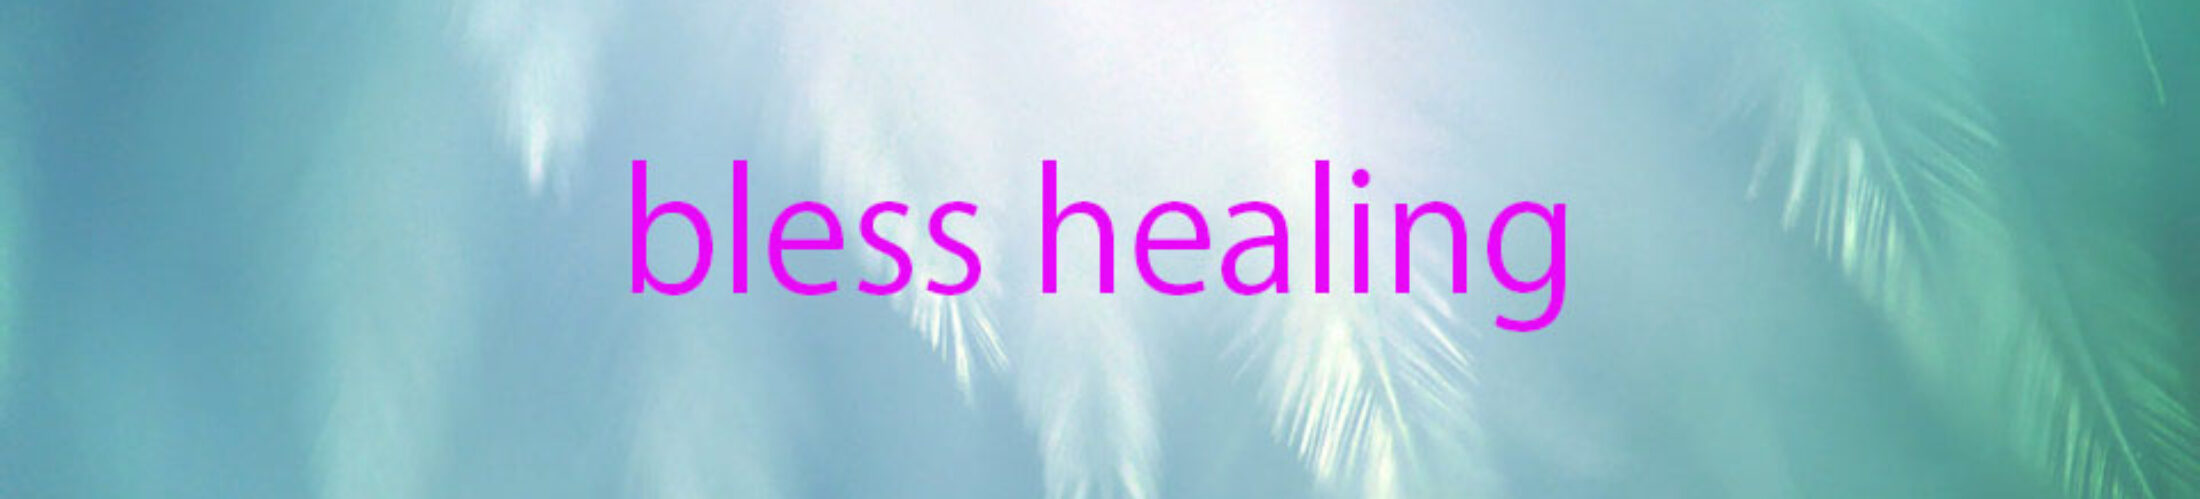 bless healing